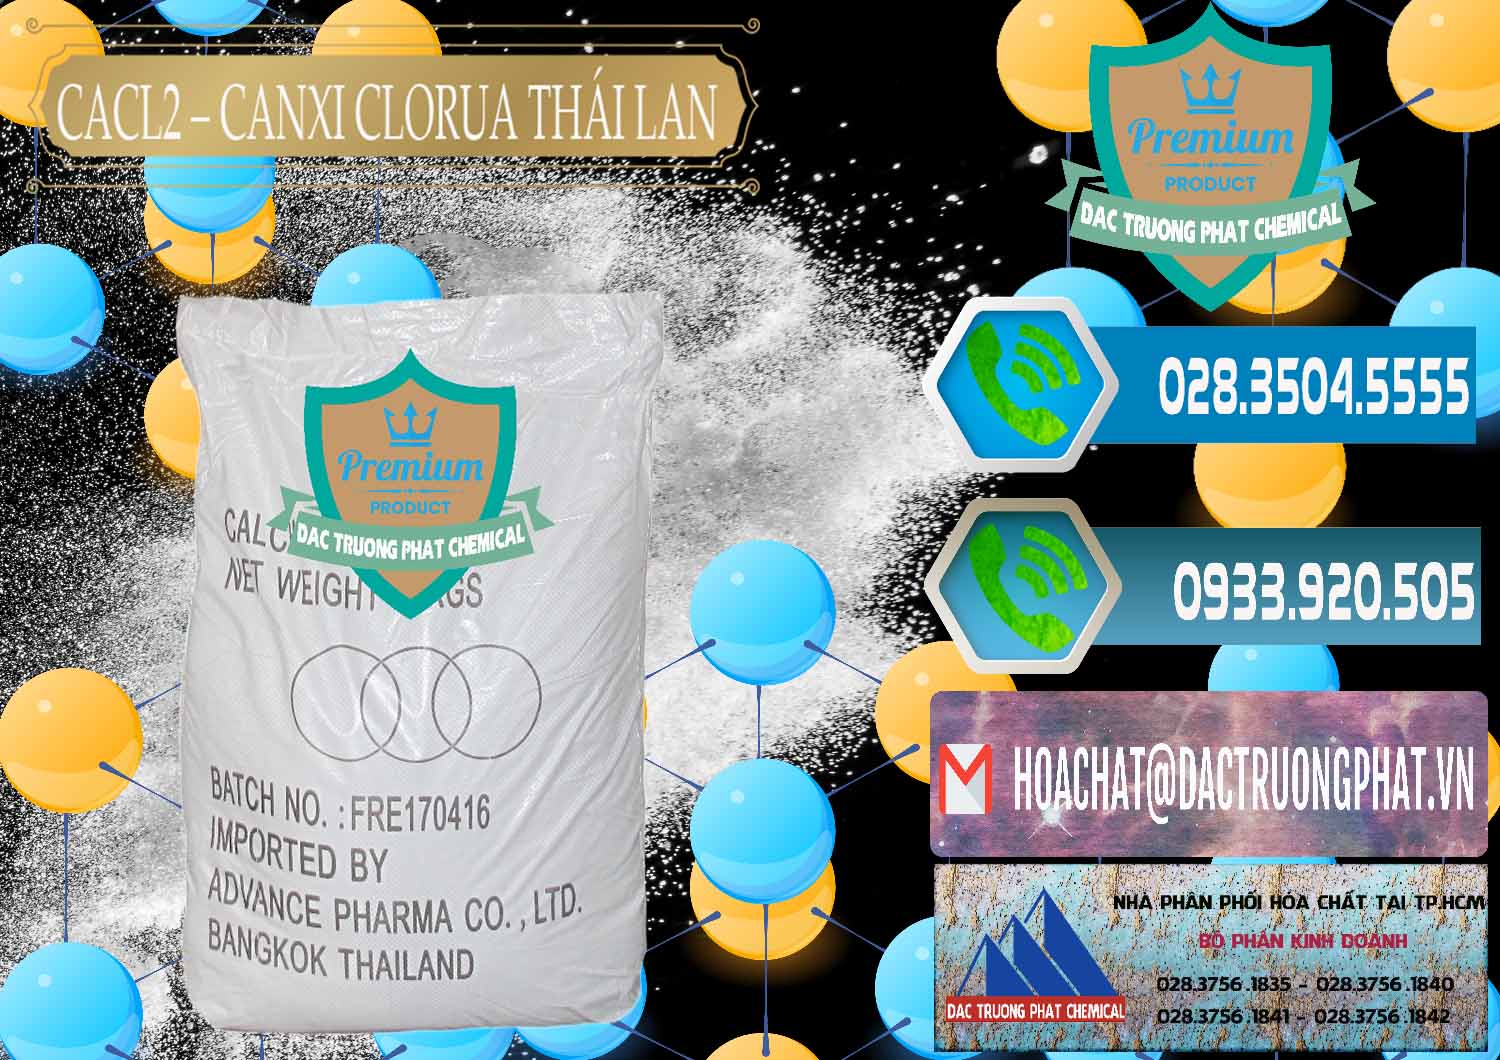 Cty chuyên bán - cung cấp CaCl2 – Canxi Clorua 96% Thái Lan - 0042 - Chuyên phân phối _ bán hóa chất tại TP.HCM - congtyhoachat.net